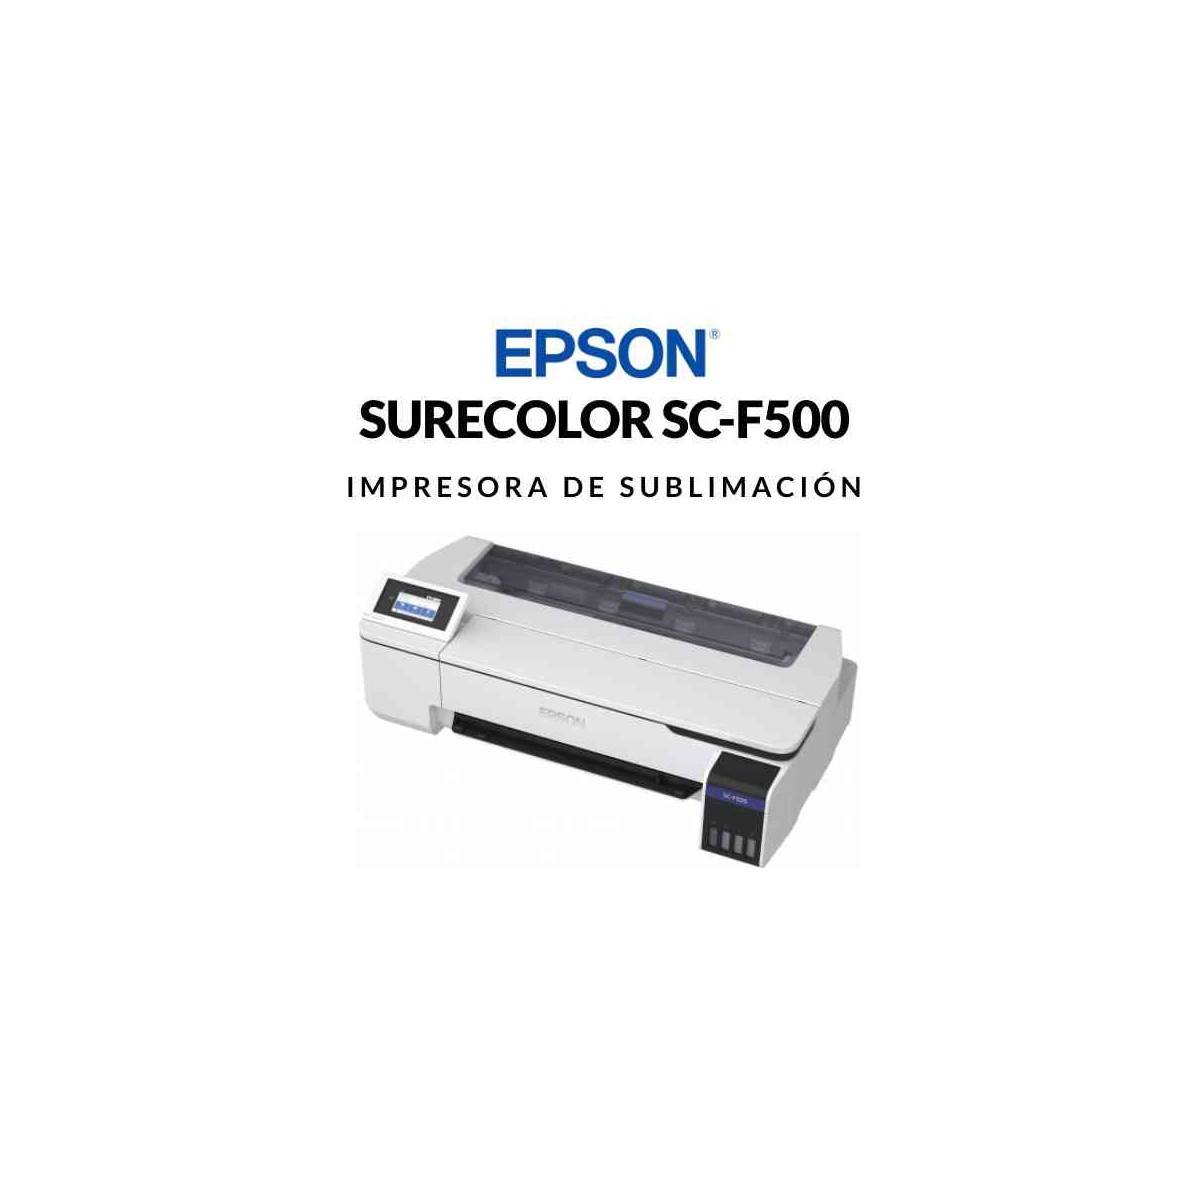 Tinta de sublimación originial EPSON para surecolor SC-F500.